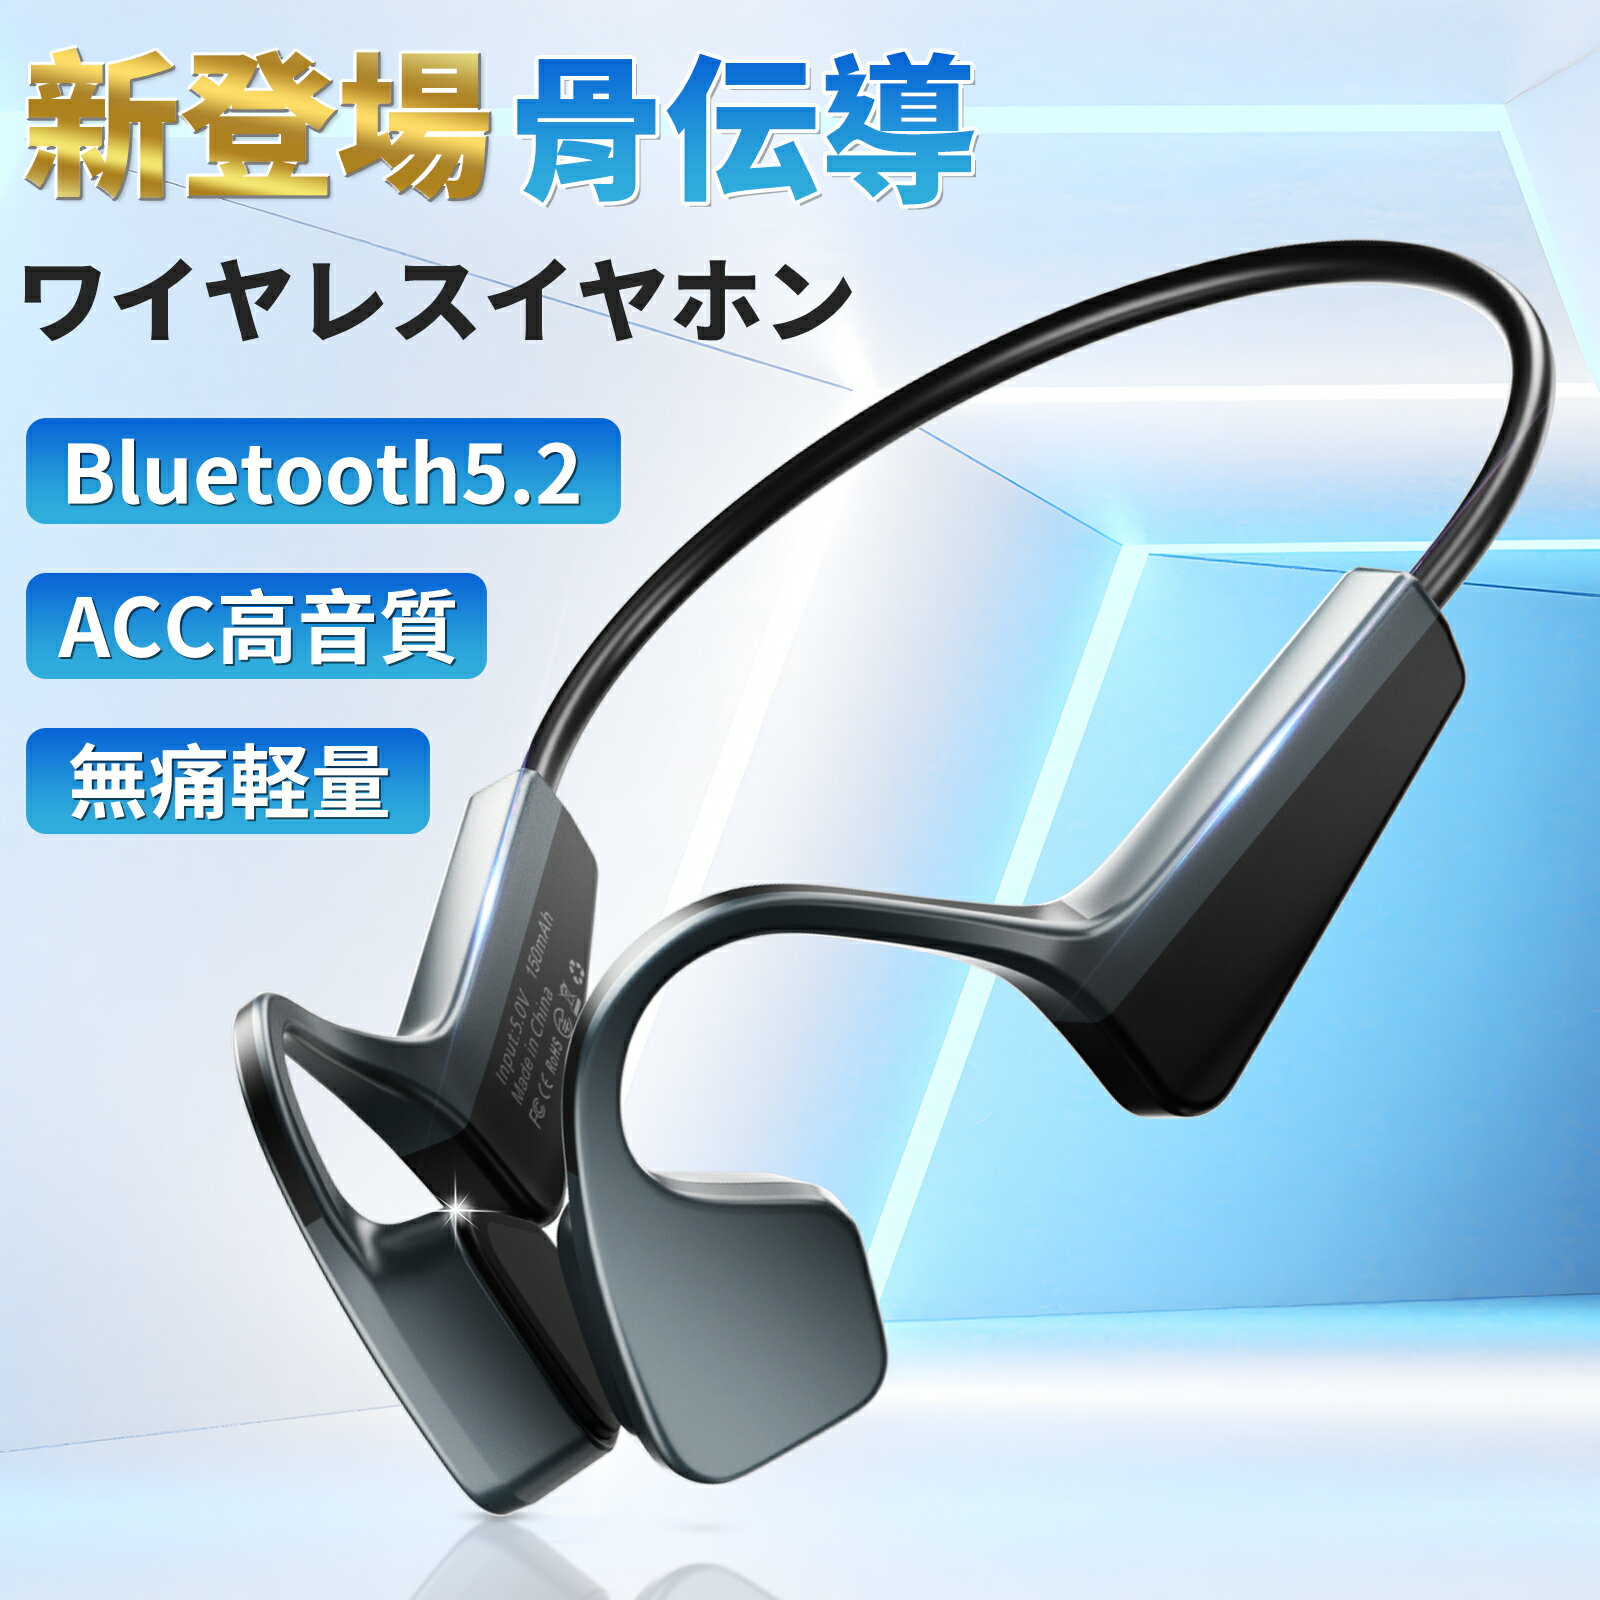 骨伝導 イヤホン Bluetooth ワイヤレス Bluetooth5.2 マイク付き ヘッドホン 最大14時間連続再生 耳掛け ブルートゥース イヤホン 自動ペアリング 両耳通話 防水 iPhone/Android適用 スポーツ …